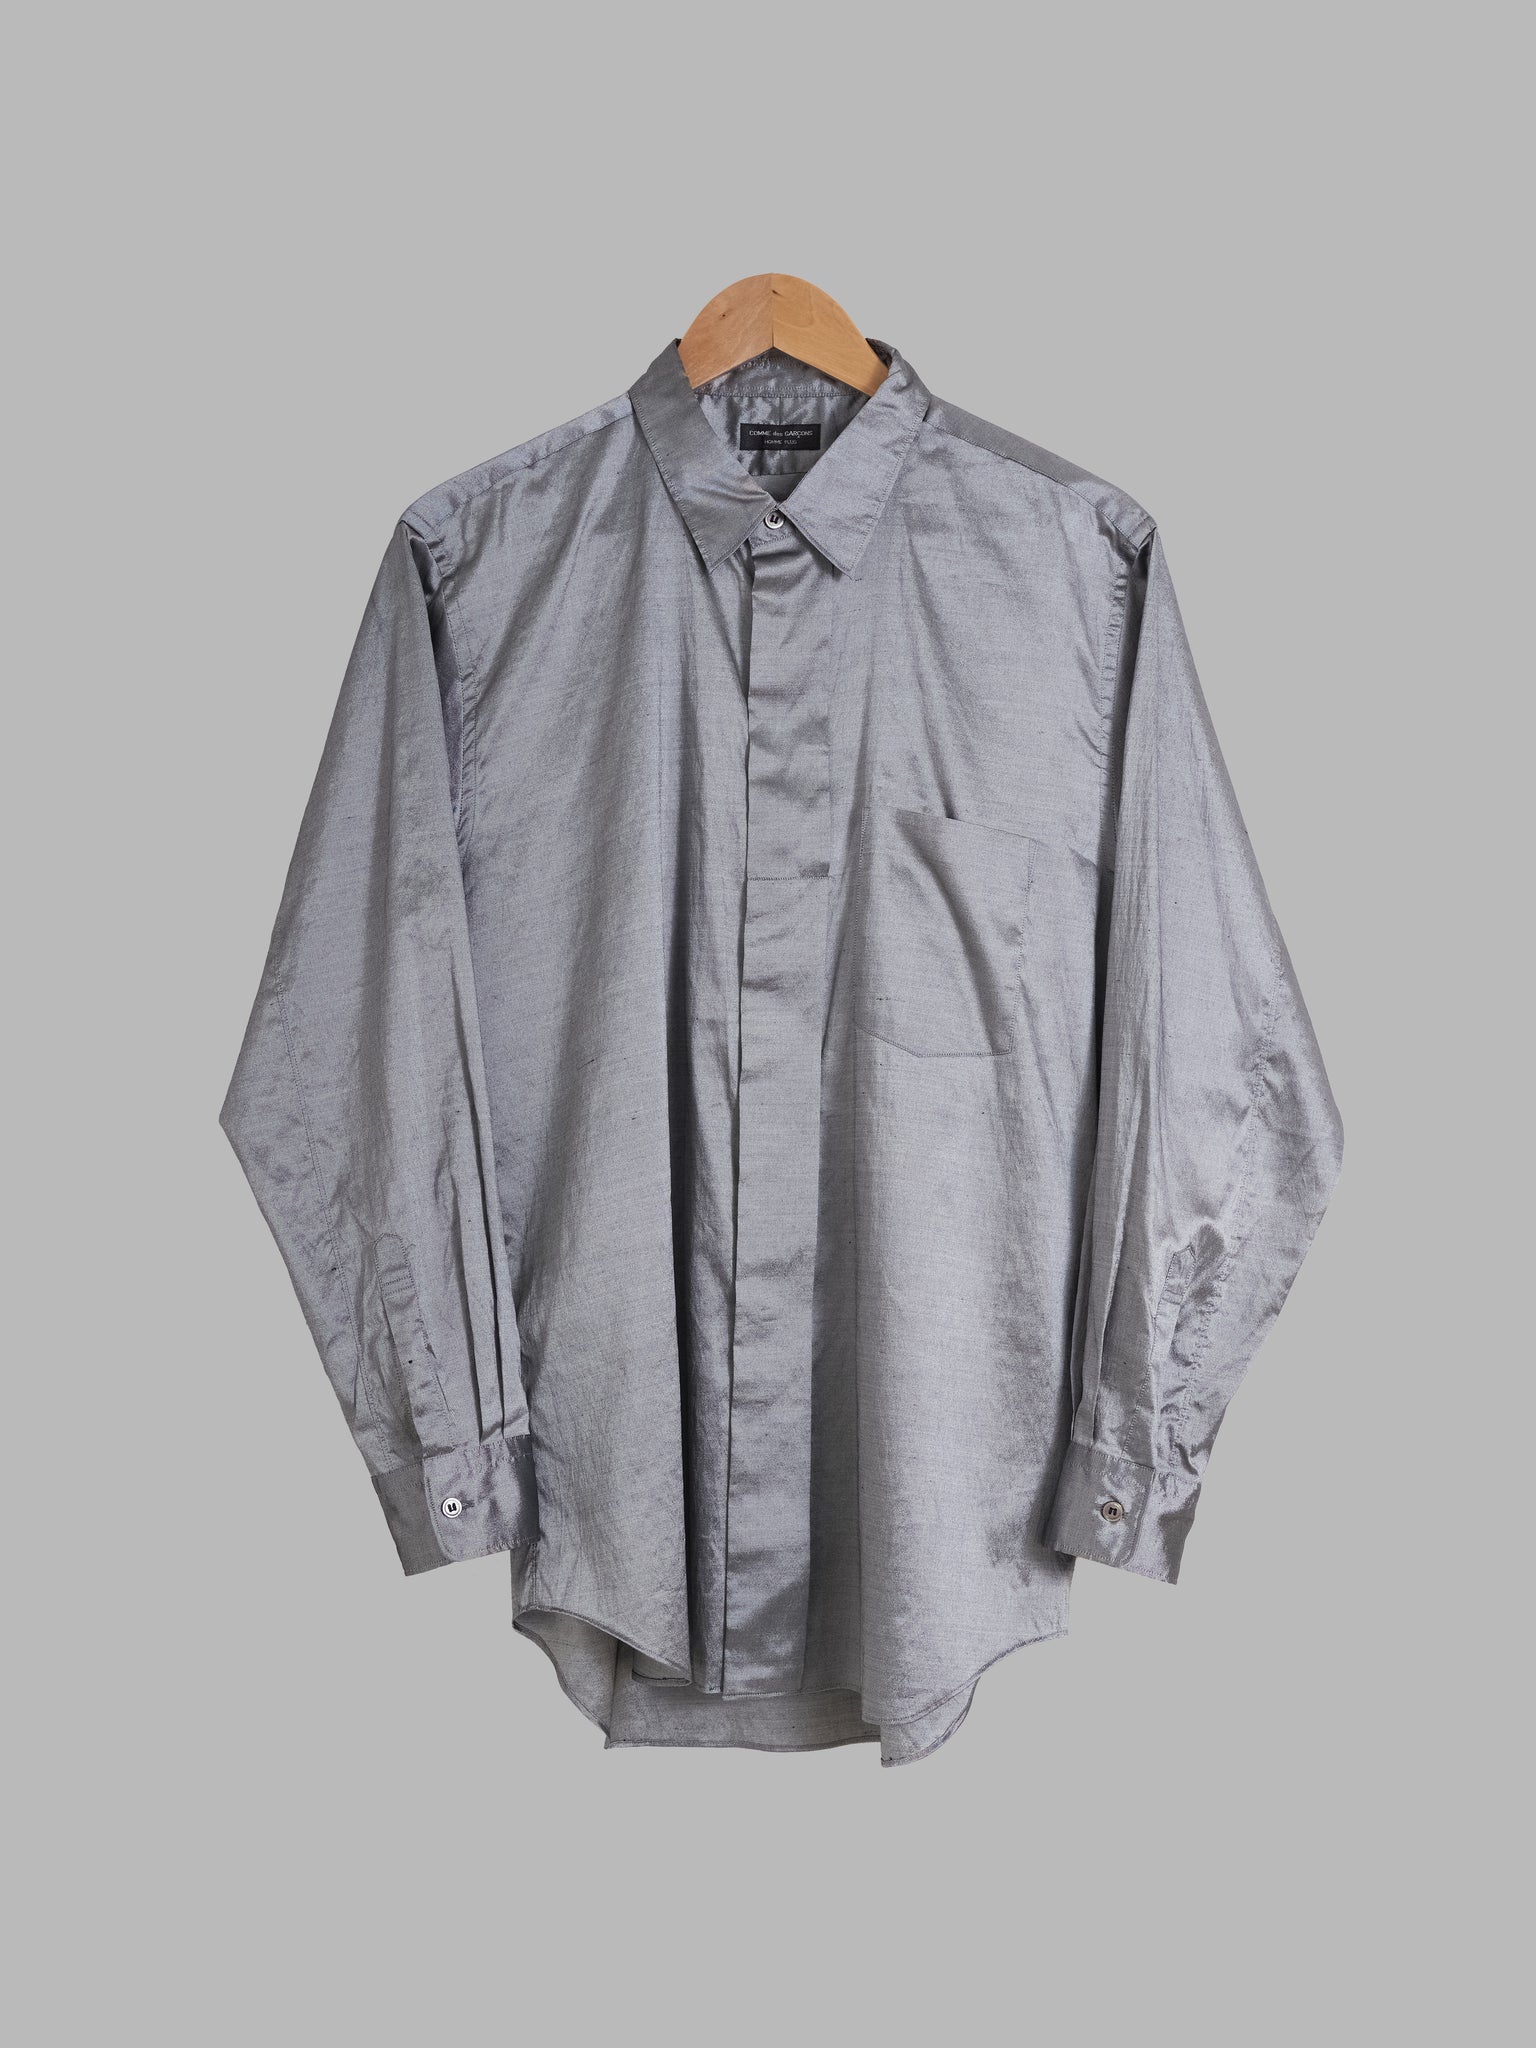 Comme des Garcons Homme Plus 1997 silver poly silk shantung wide placket shirt M